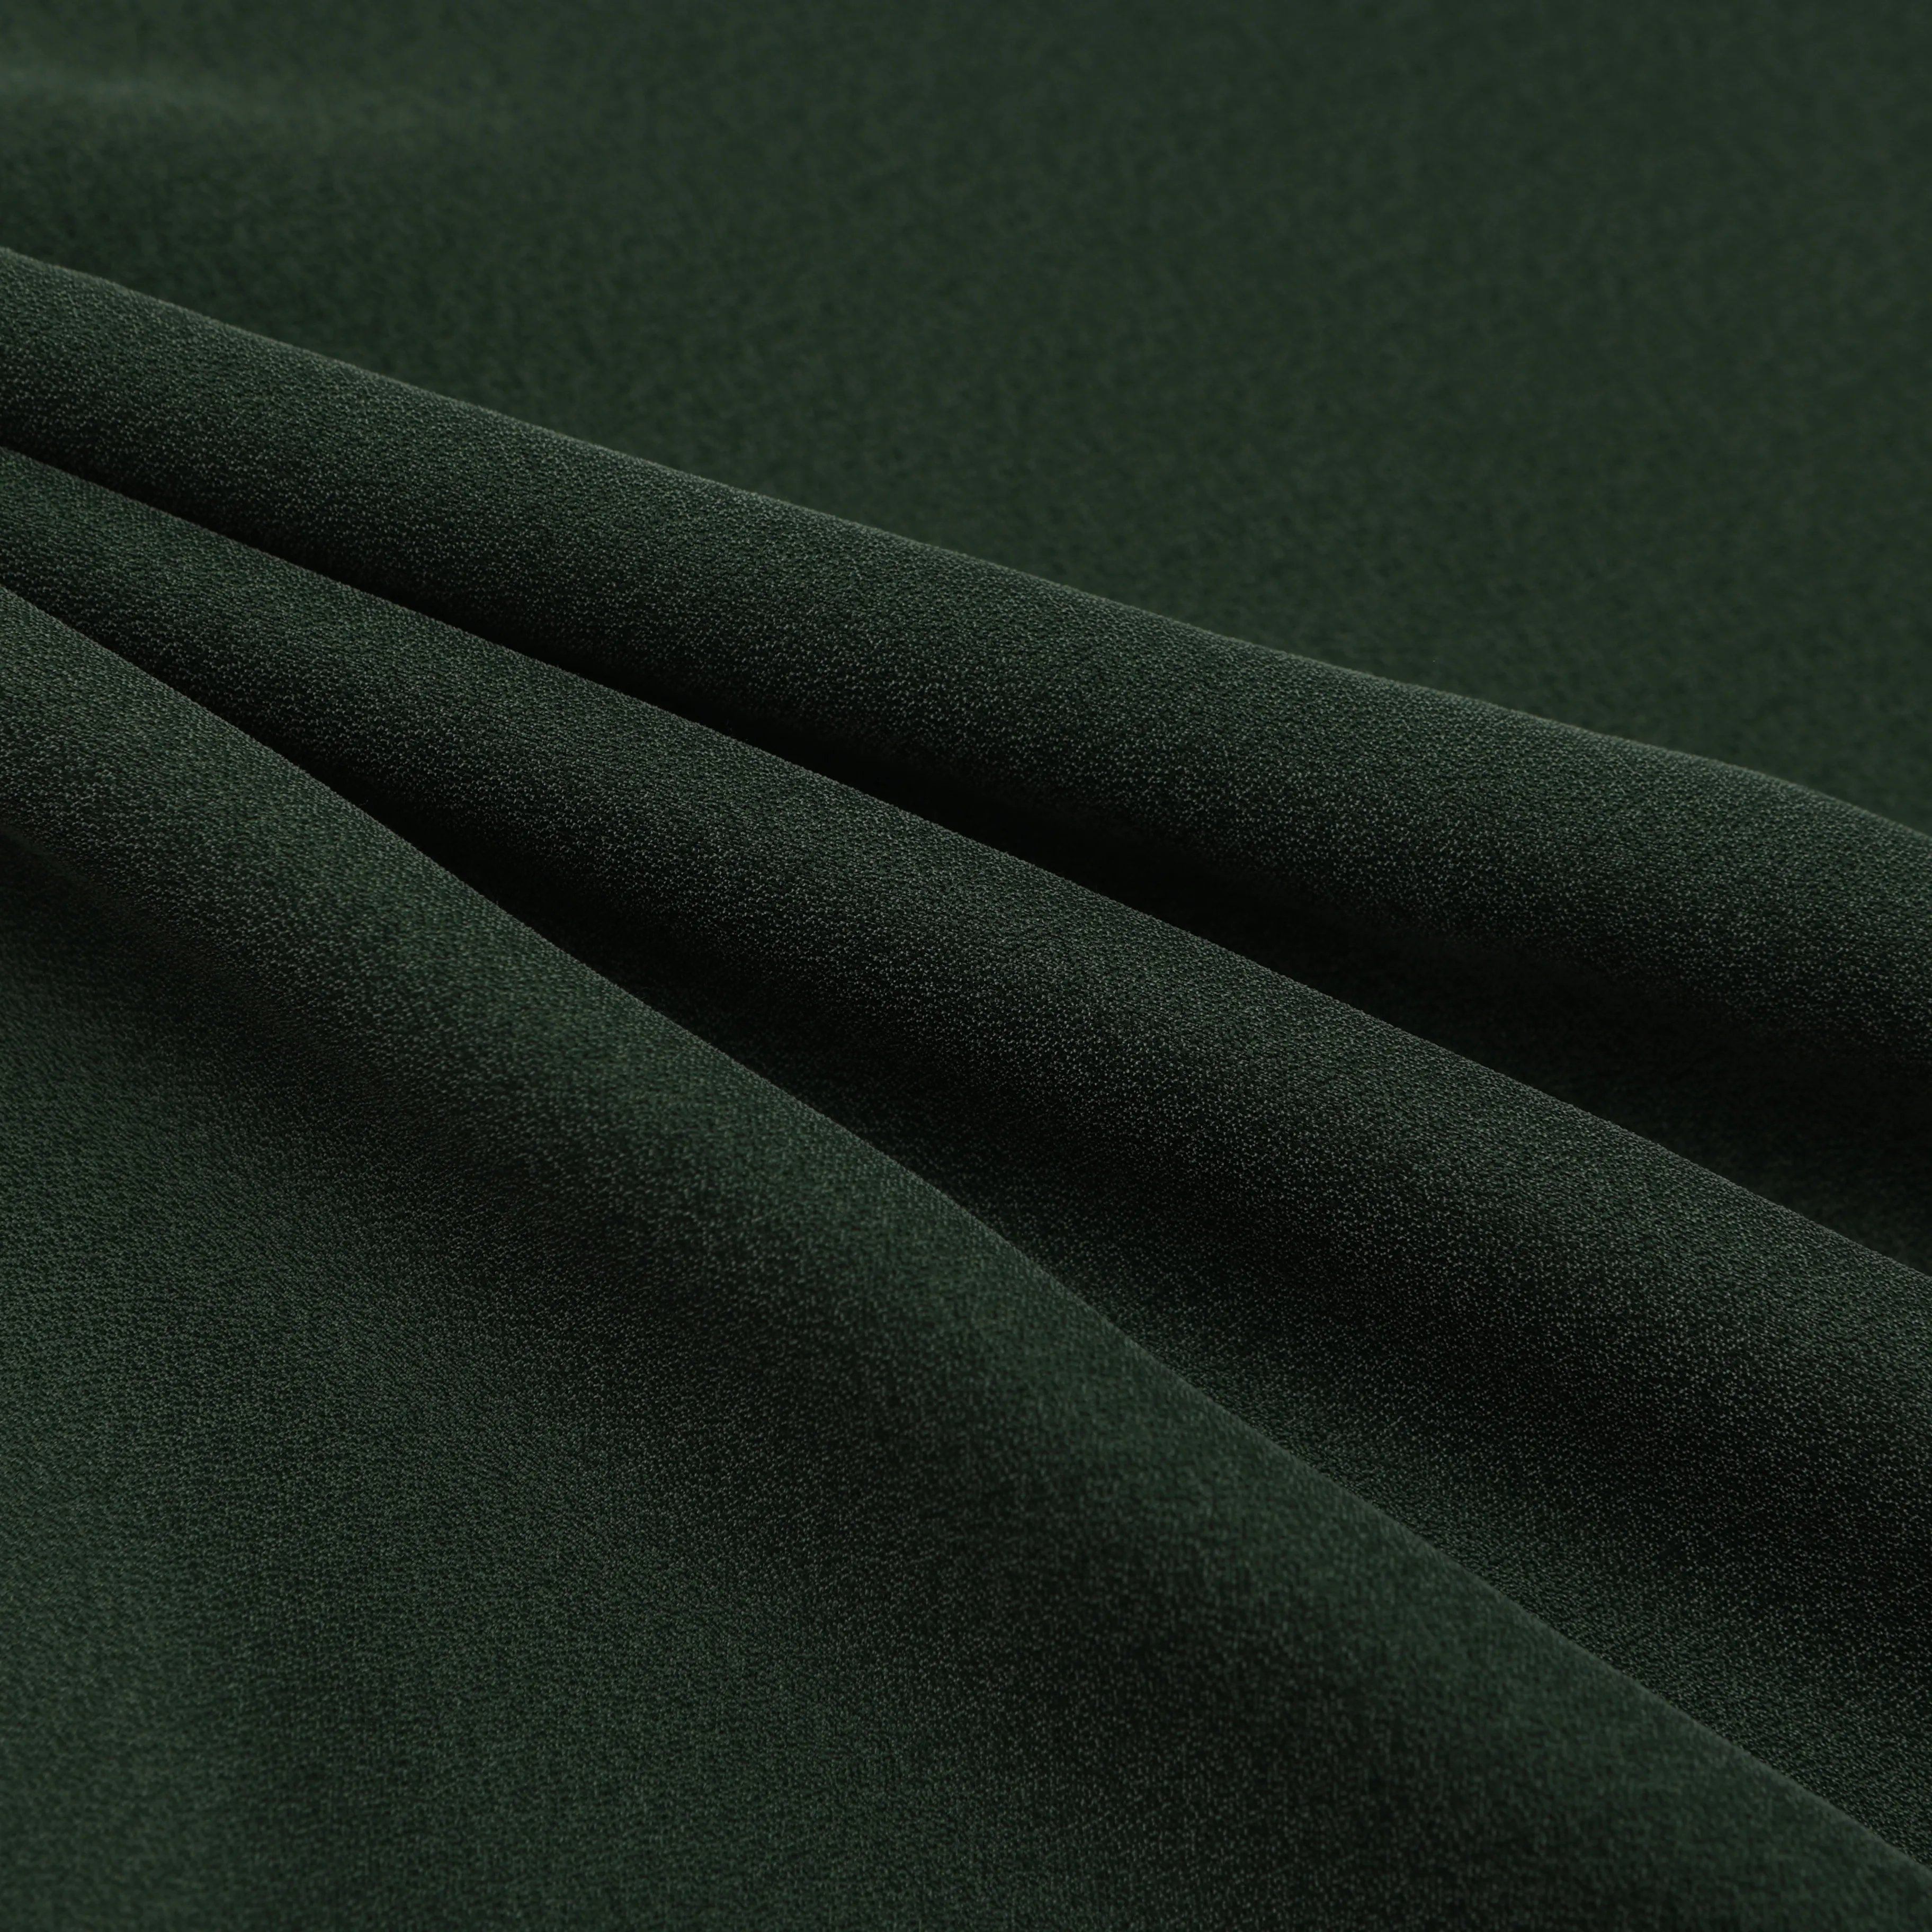 Ткань Cupro, бесплатный образец, тканая шелковая ткань 70 г/м2, dobby cupro, вискозная ткань для платья